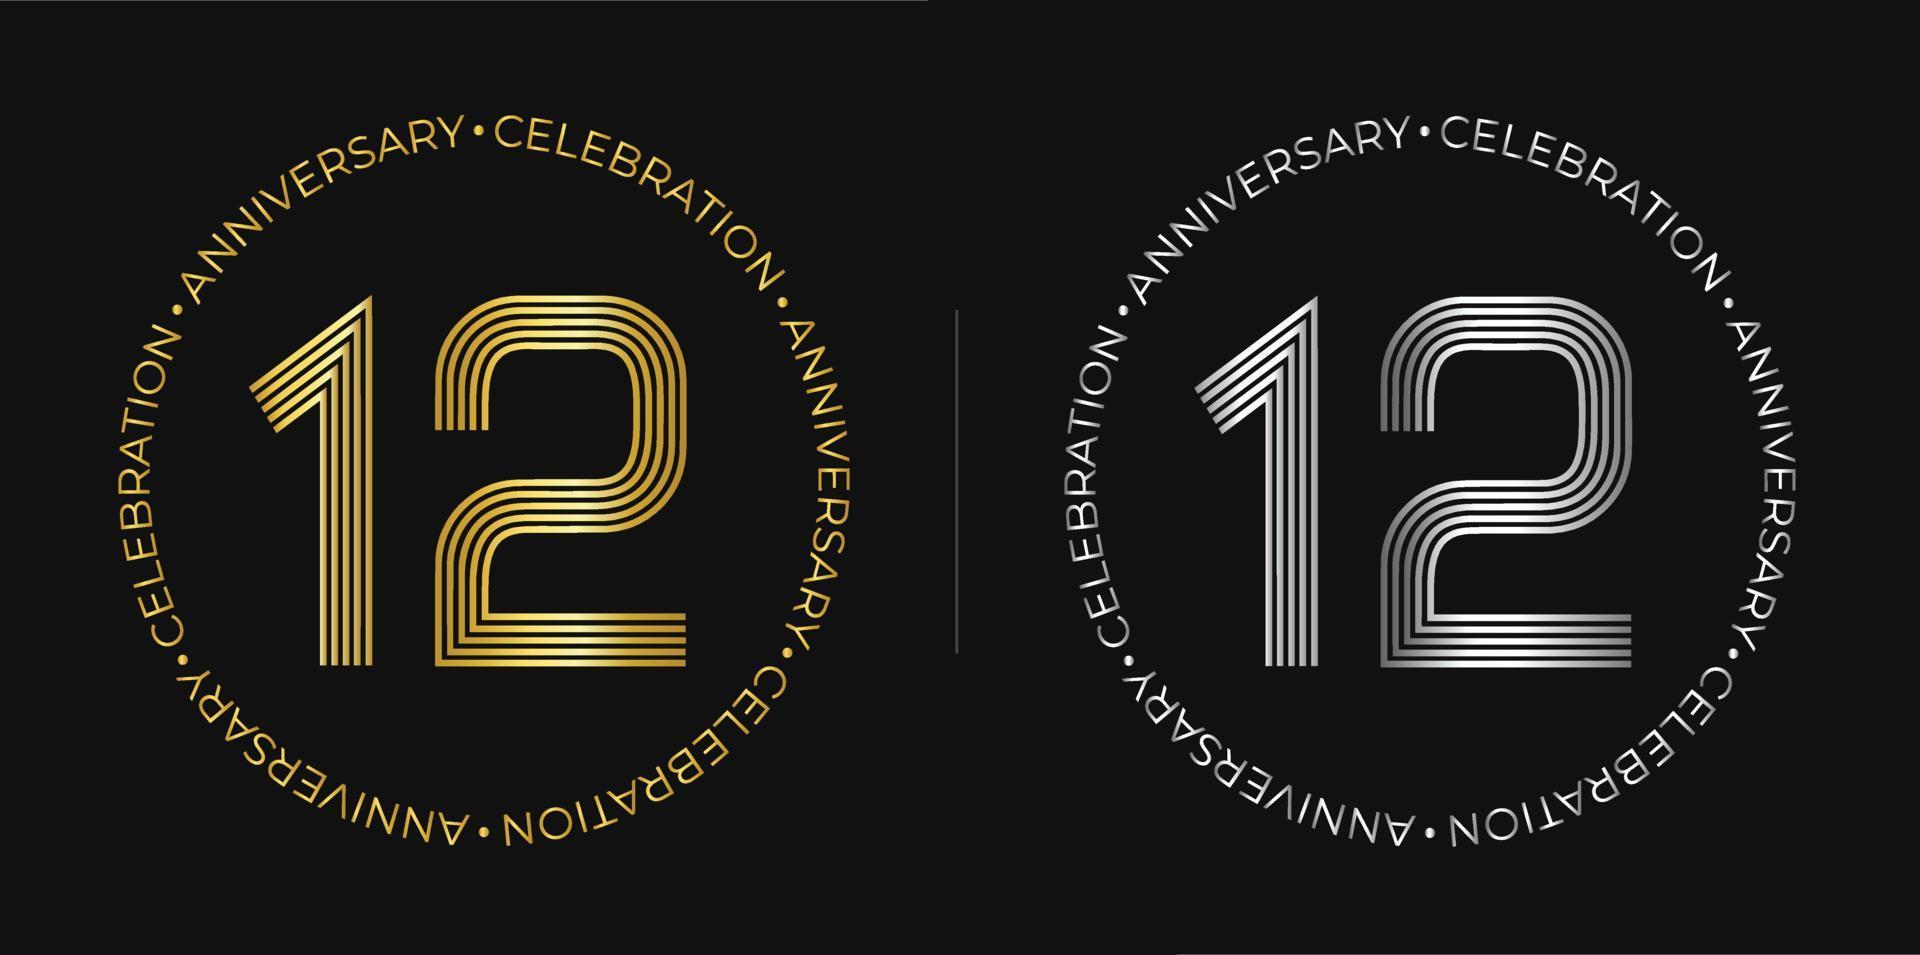 12 cumpleaños. banner de celebración de aniversario de doce años en colores dorado y plateado. logo circular con diseño de números originales en líneas elegantes. vector